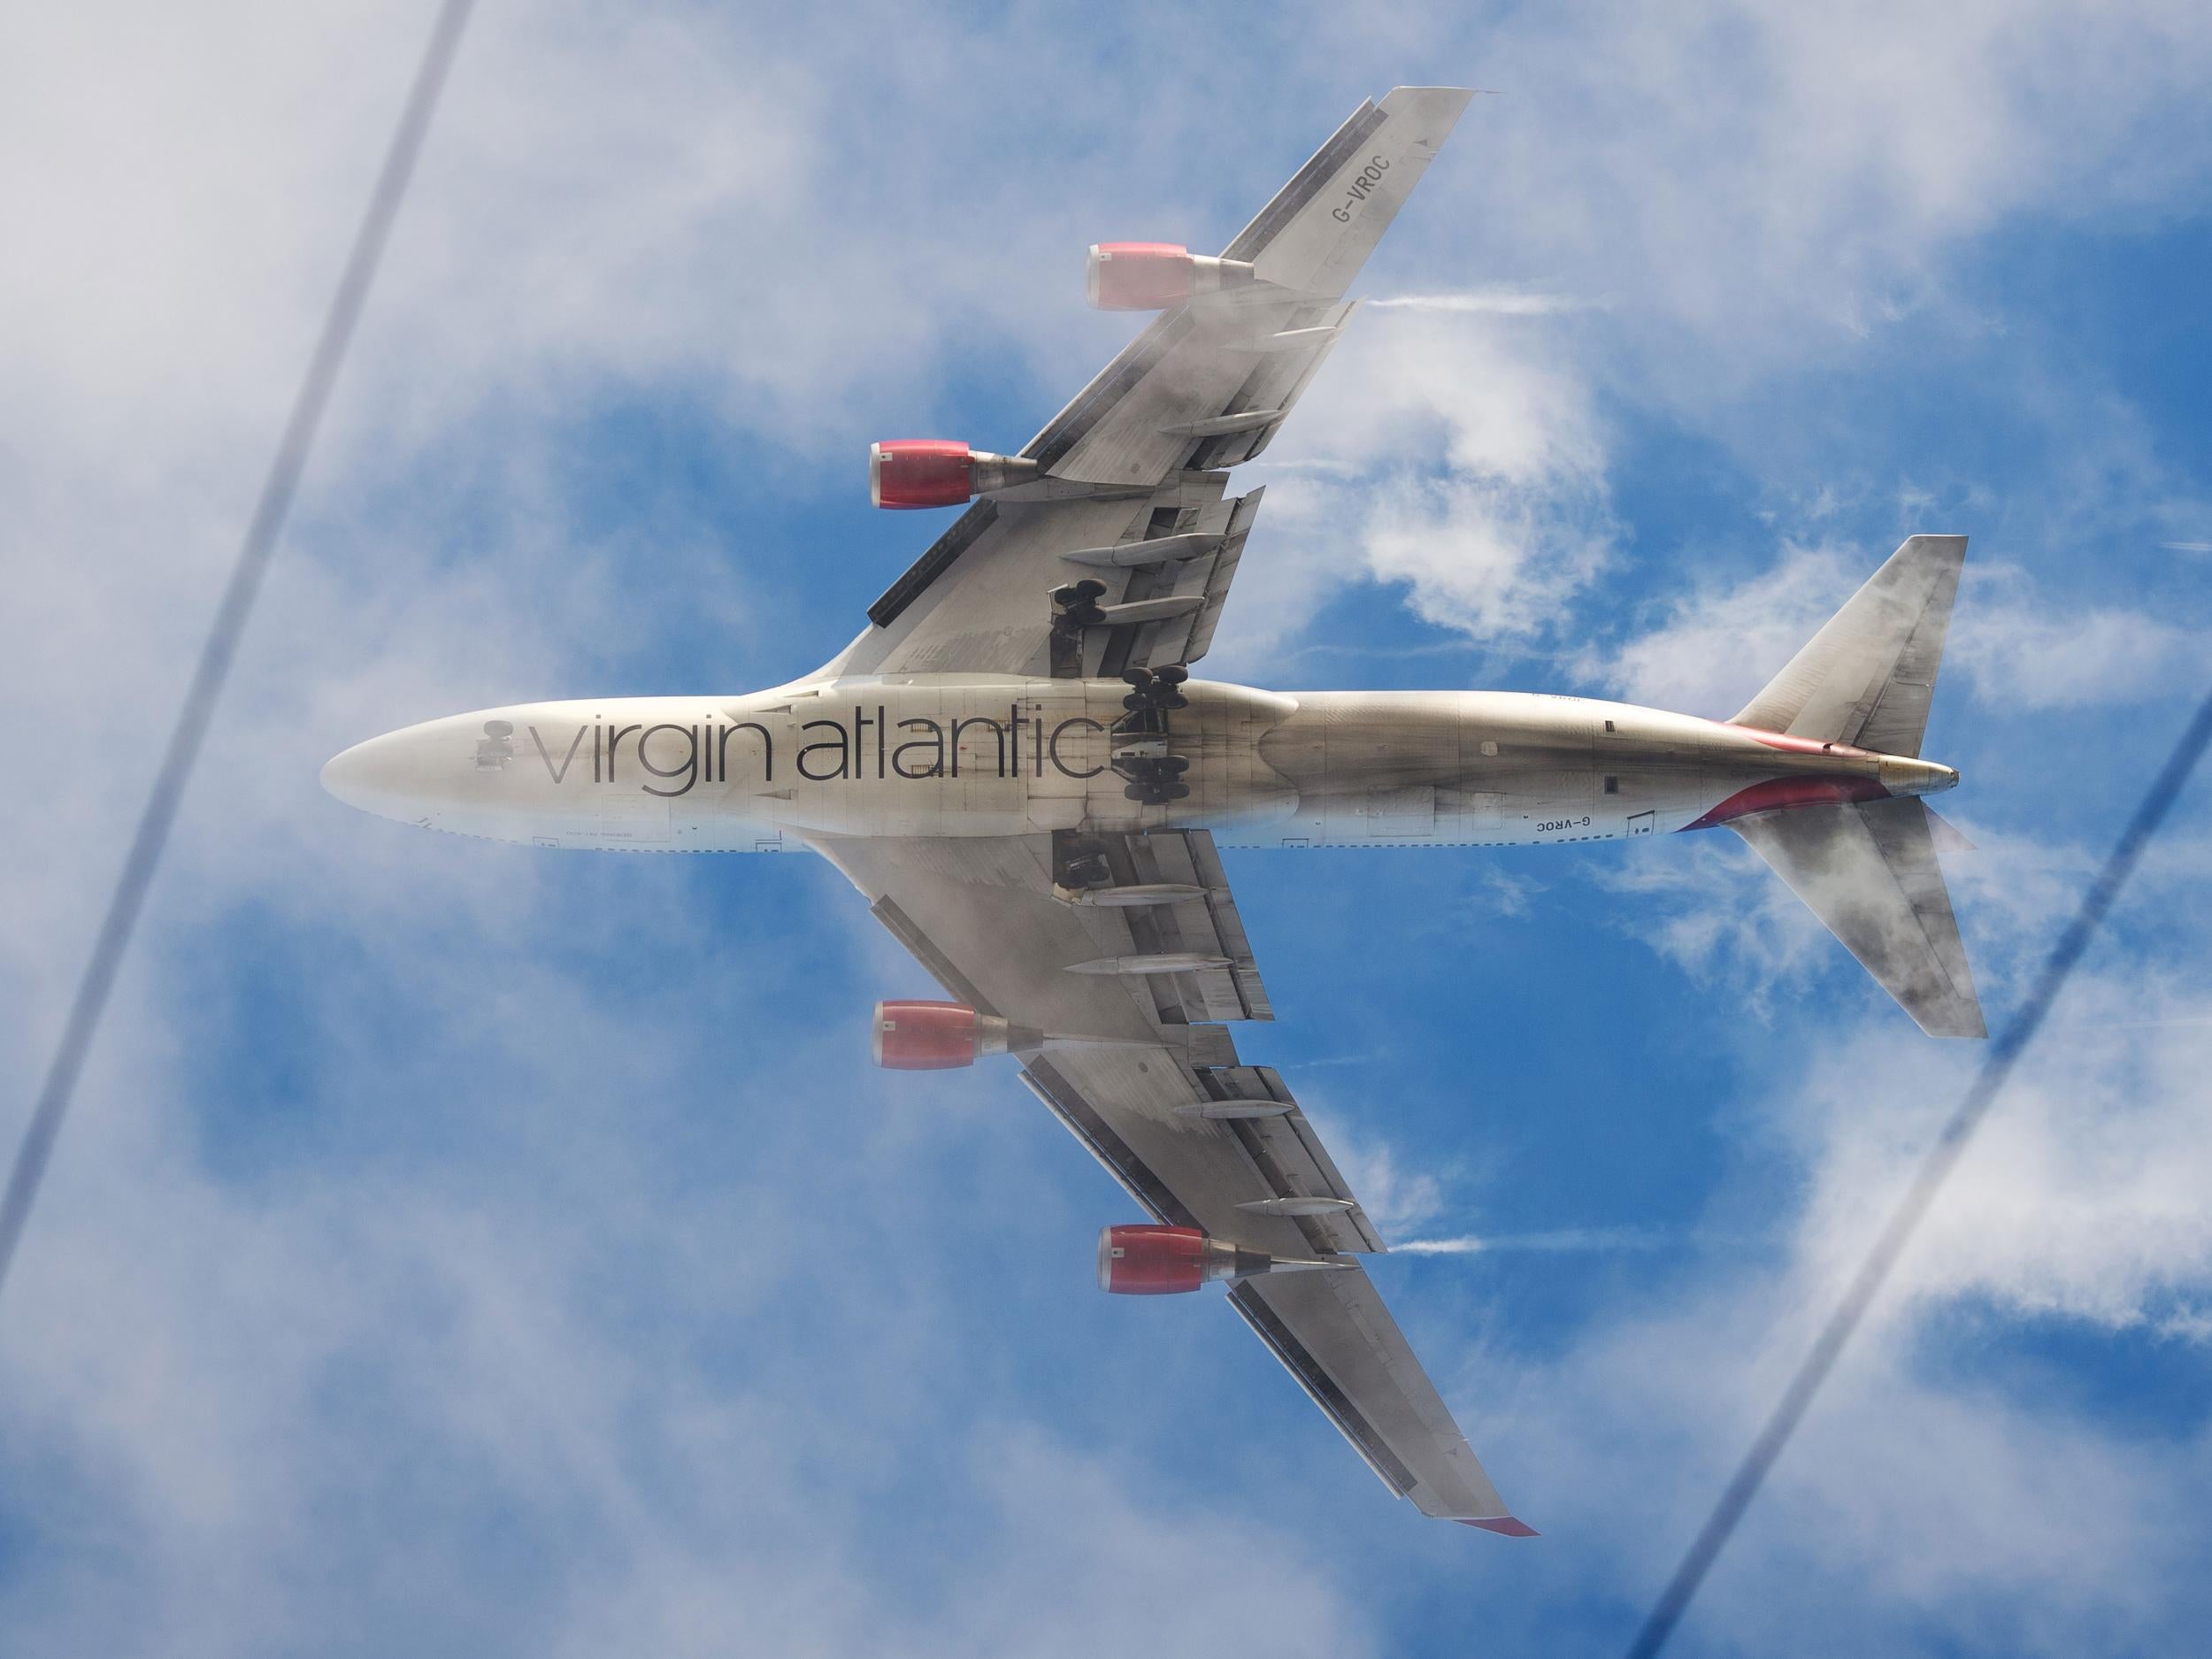 Virgin Atlantic will still keep its Flying Club